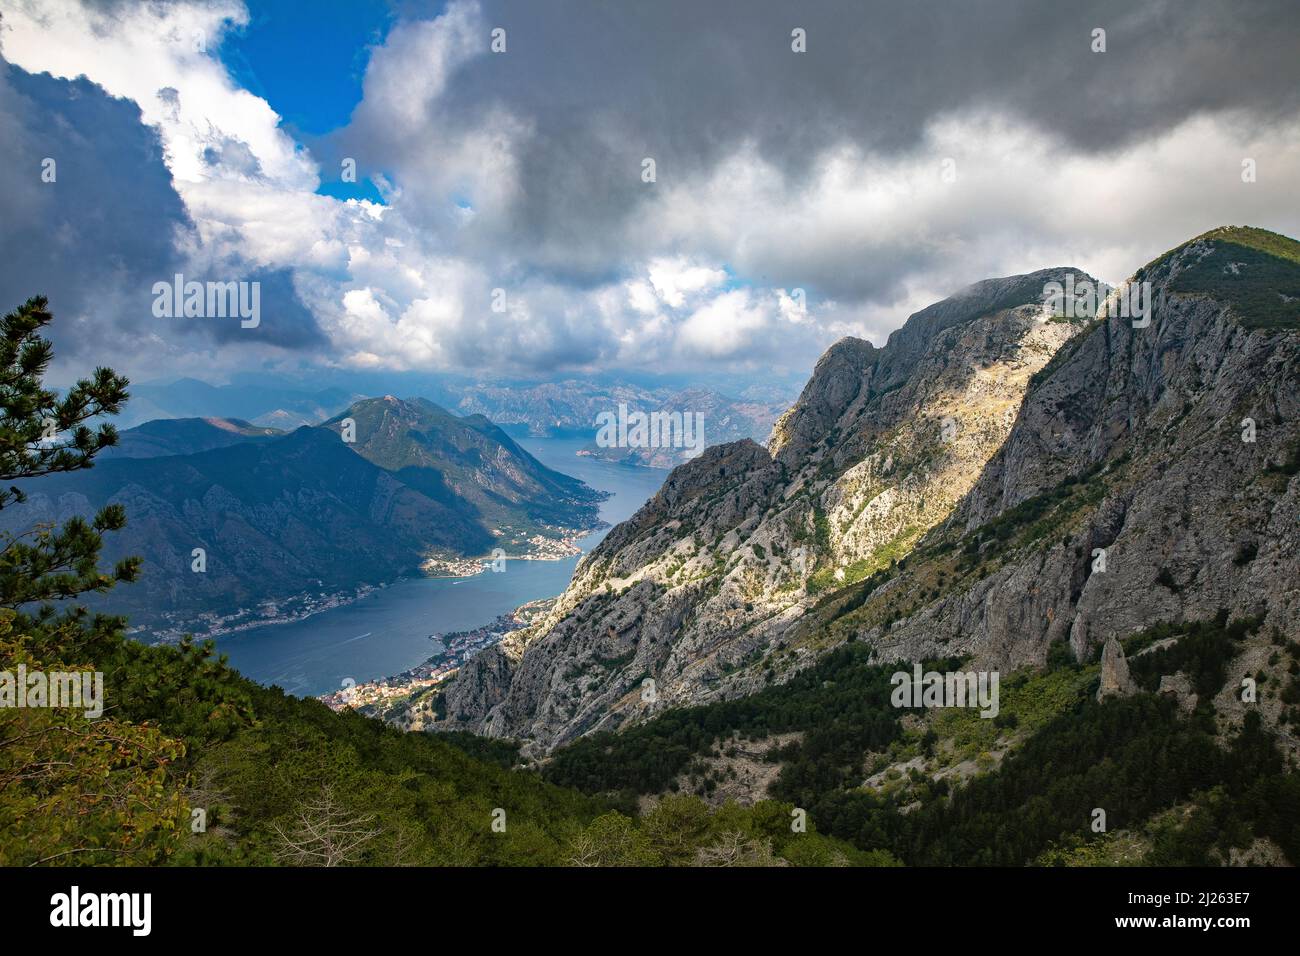 Vista de la bahía de Kotor, Montenegro Foto de stock